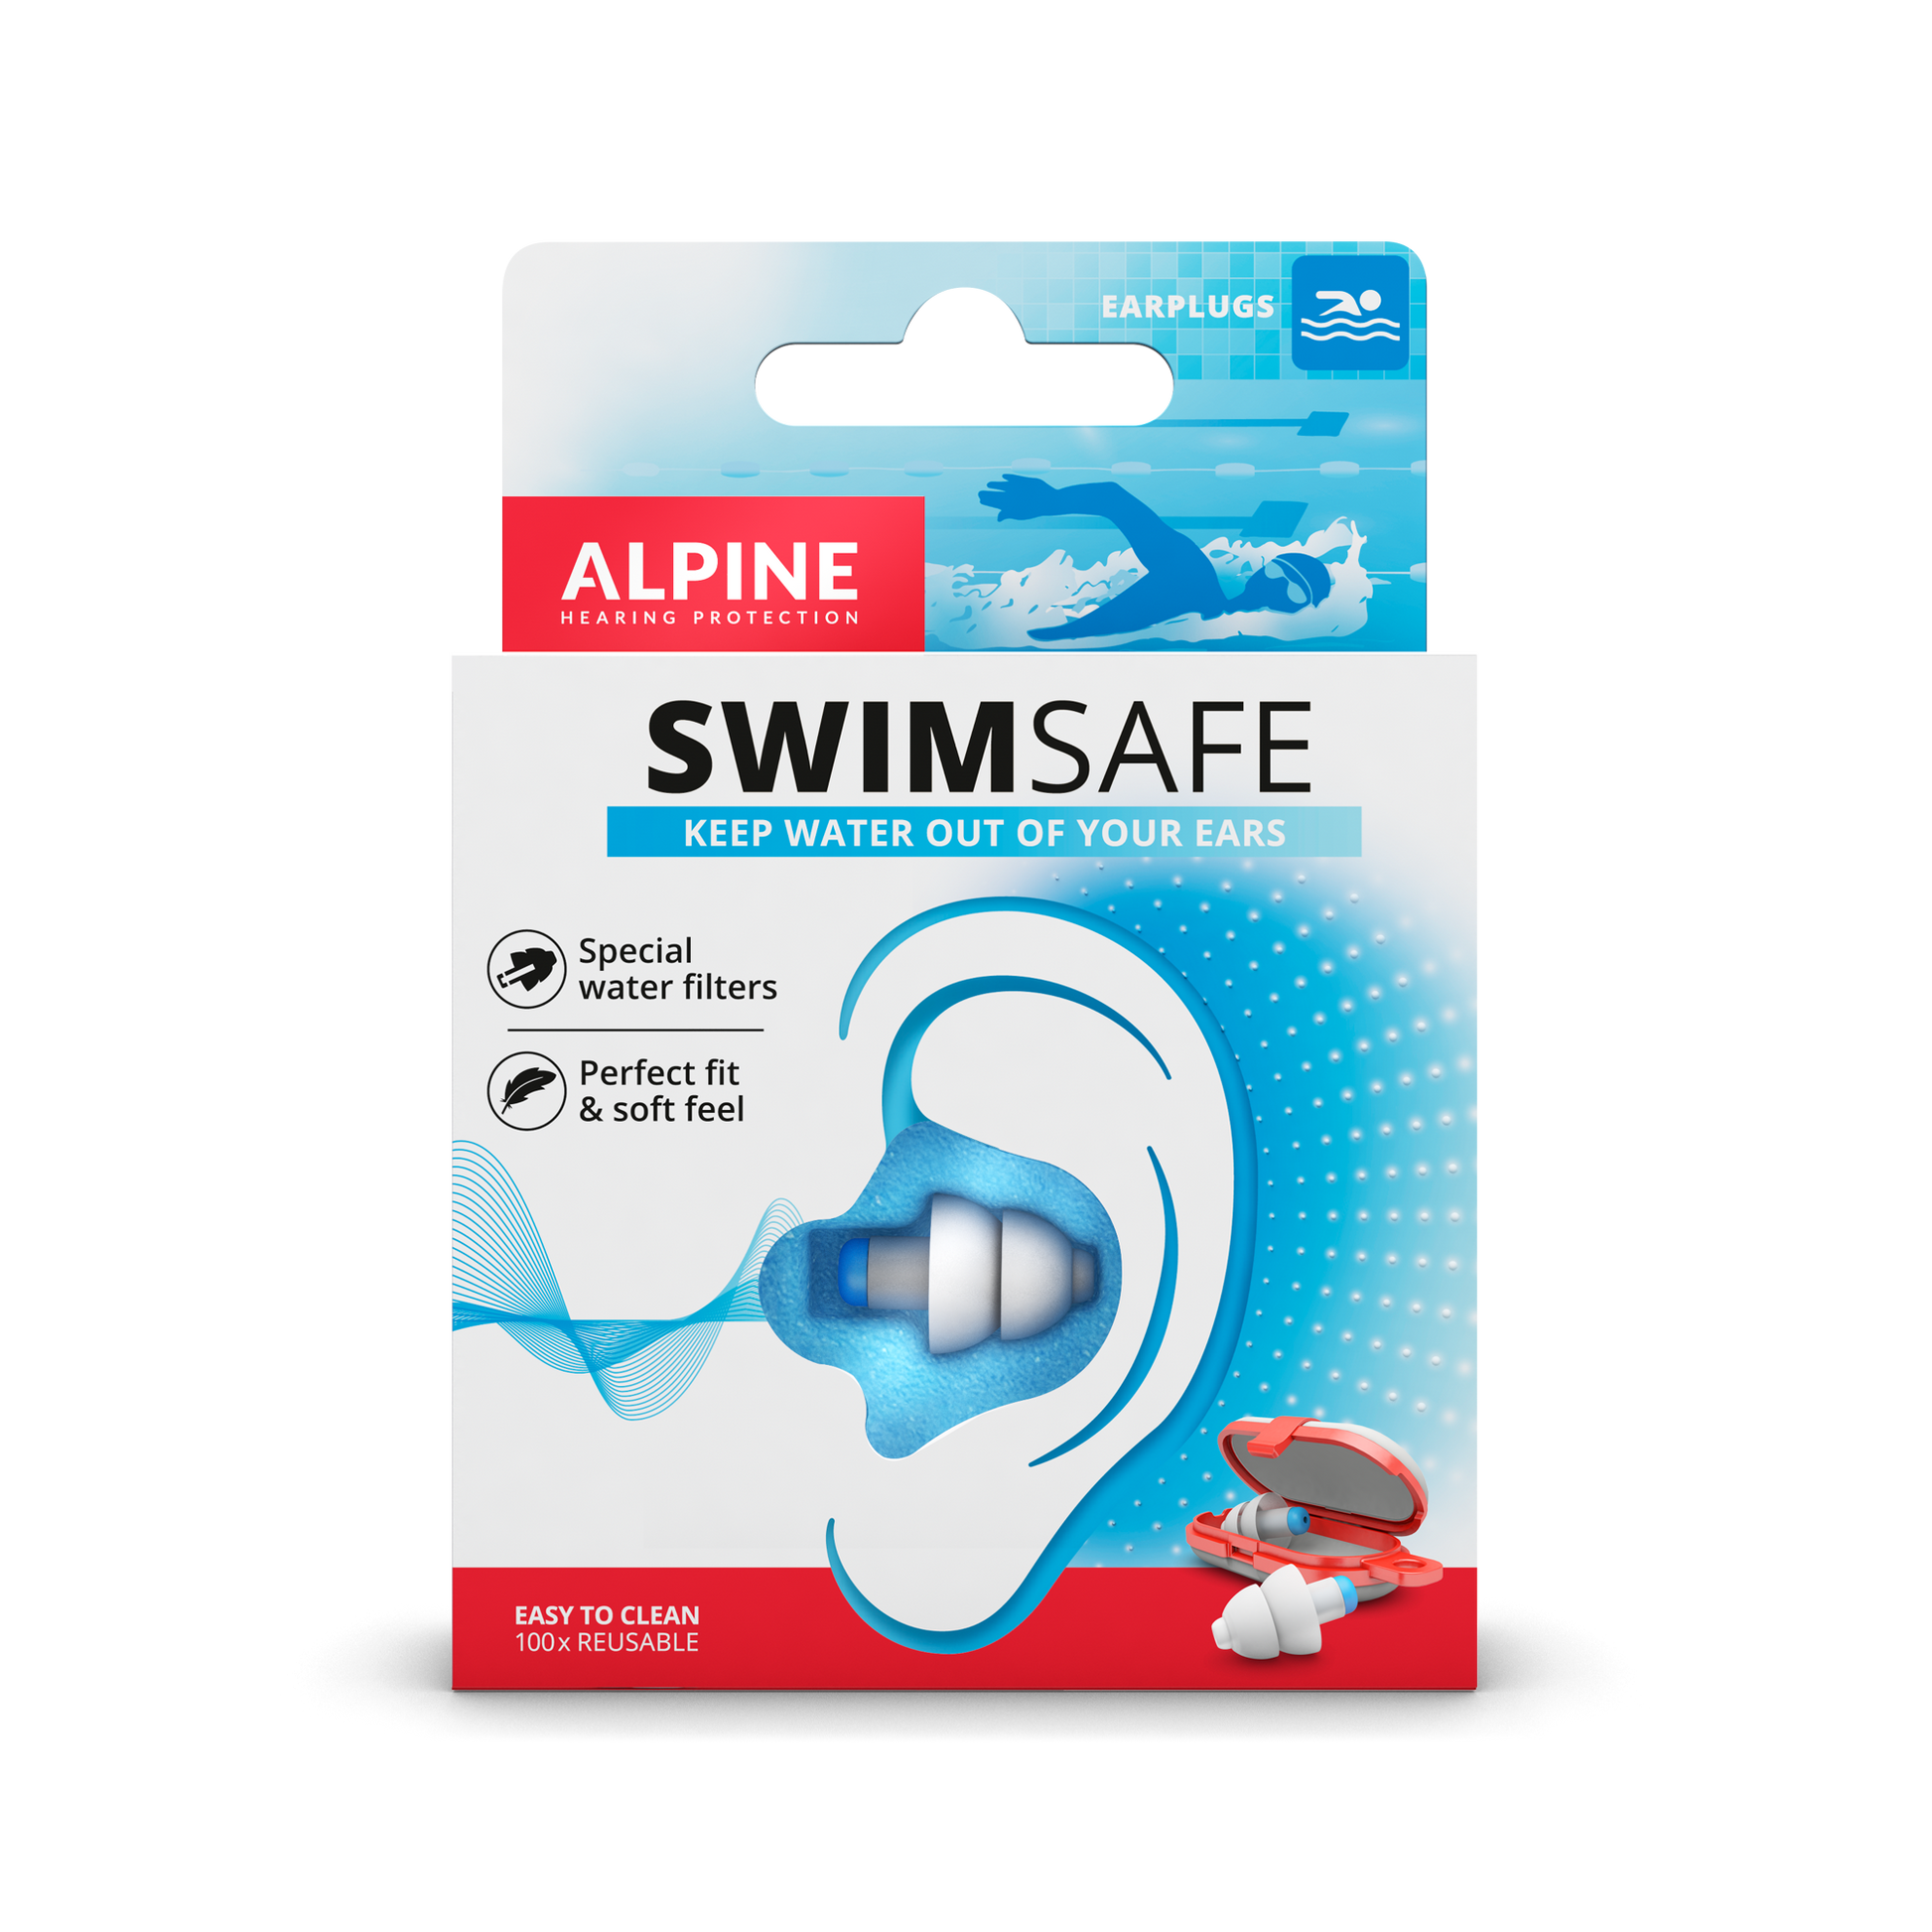 Qualité casque de natation synchronisé pour une sécurité maximale